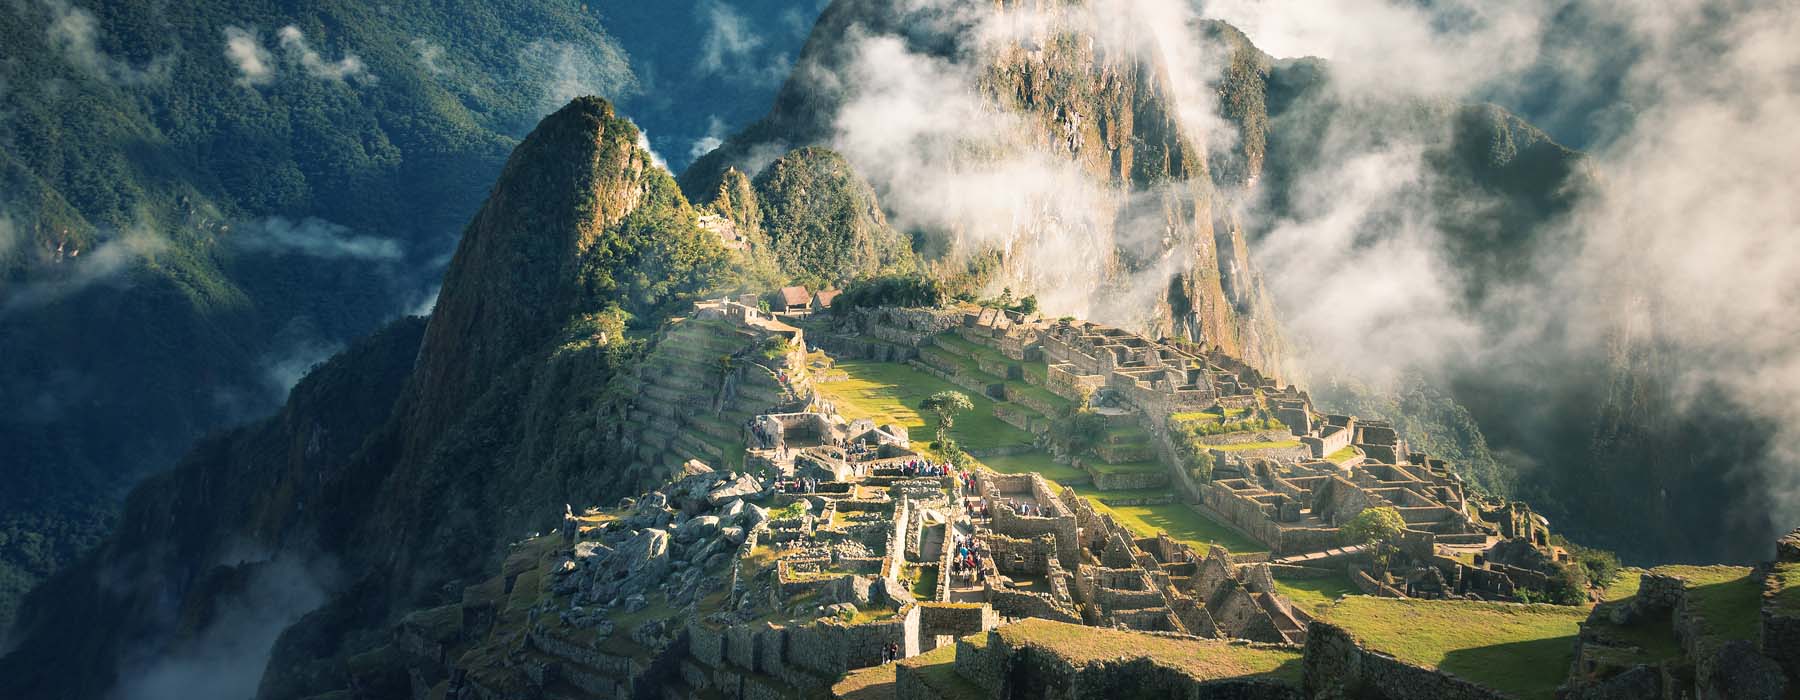 Peru<br class="hidden-md hidden-lg" /> Responsible Travel